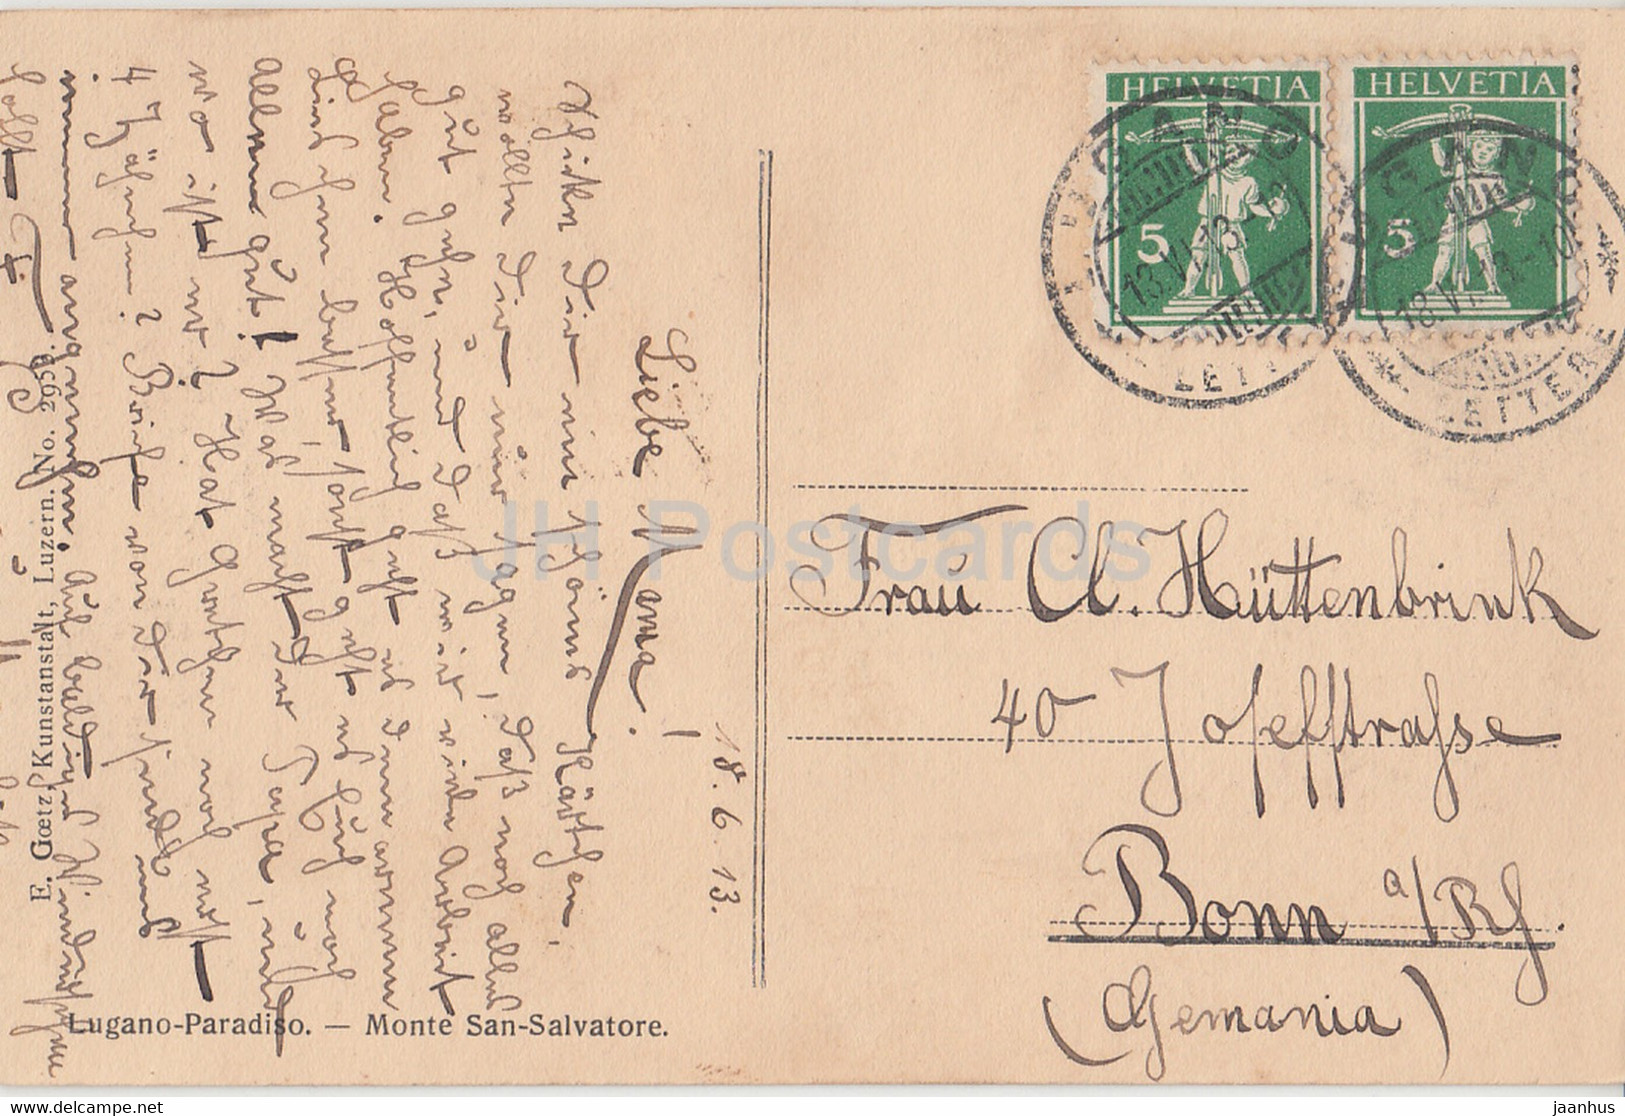 Lugano Paradiso - Monte San Salvatore - 80 - Old Postcard - 1913 - Switzerland - Used - Paradiso